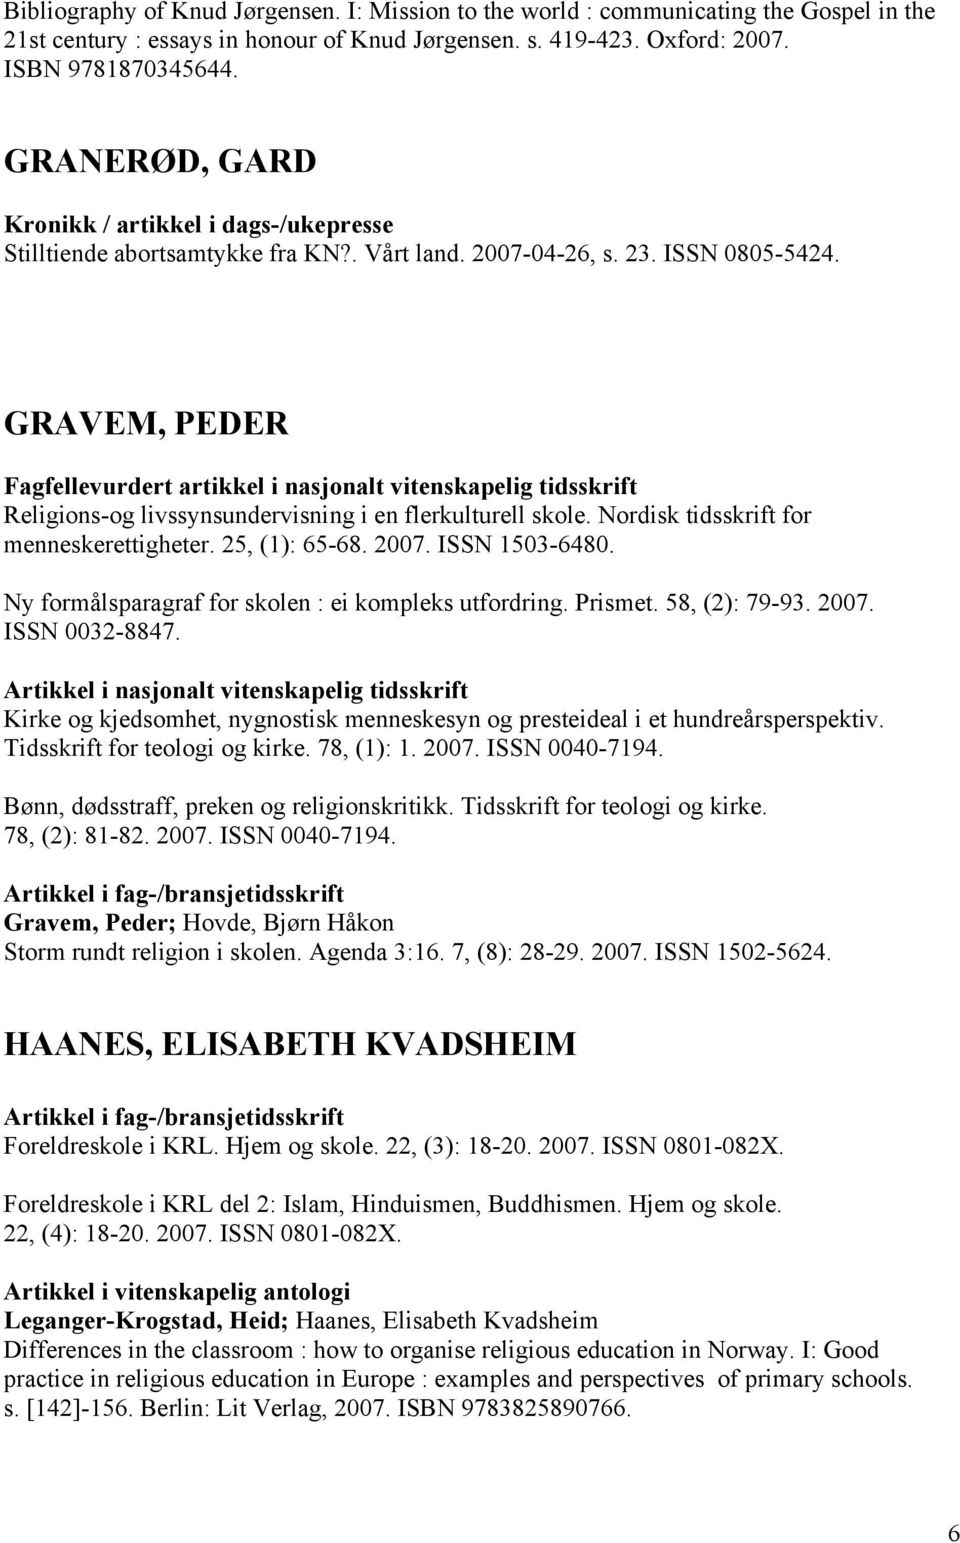 GRAVEM, PEDER Religions-og livssynsundervisning i en flerkulturell skole. Nordisk tidsskrift for menneskerettigheter. 25, (1): 65-68. 2007. ISSN 1503-6480.